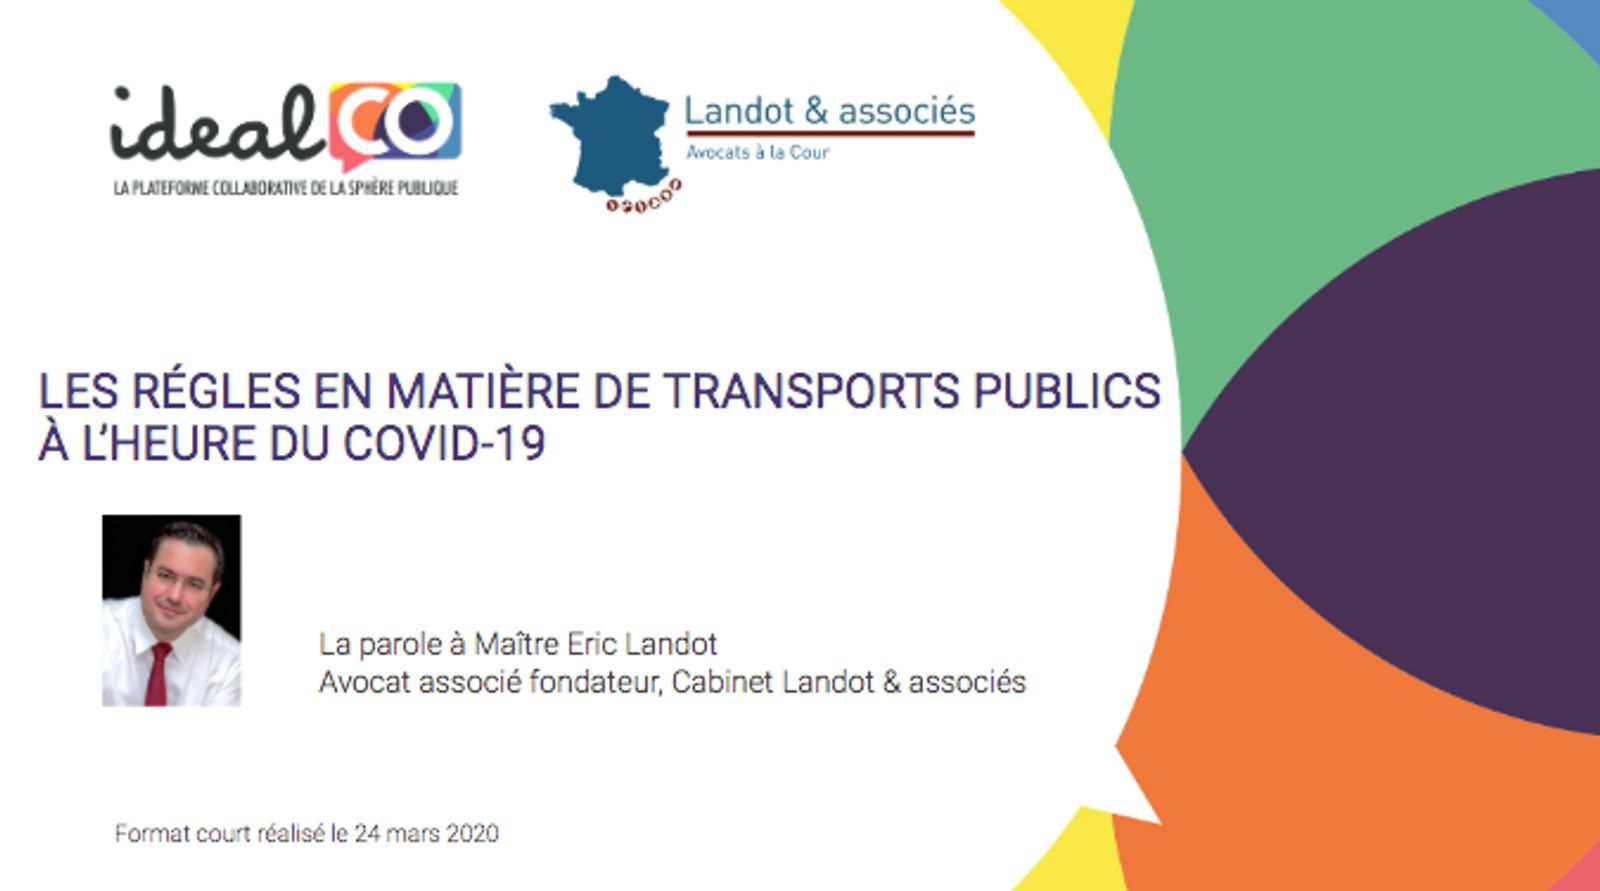 Les règles en matière de transports publics à l'heure du COVID-19